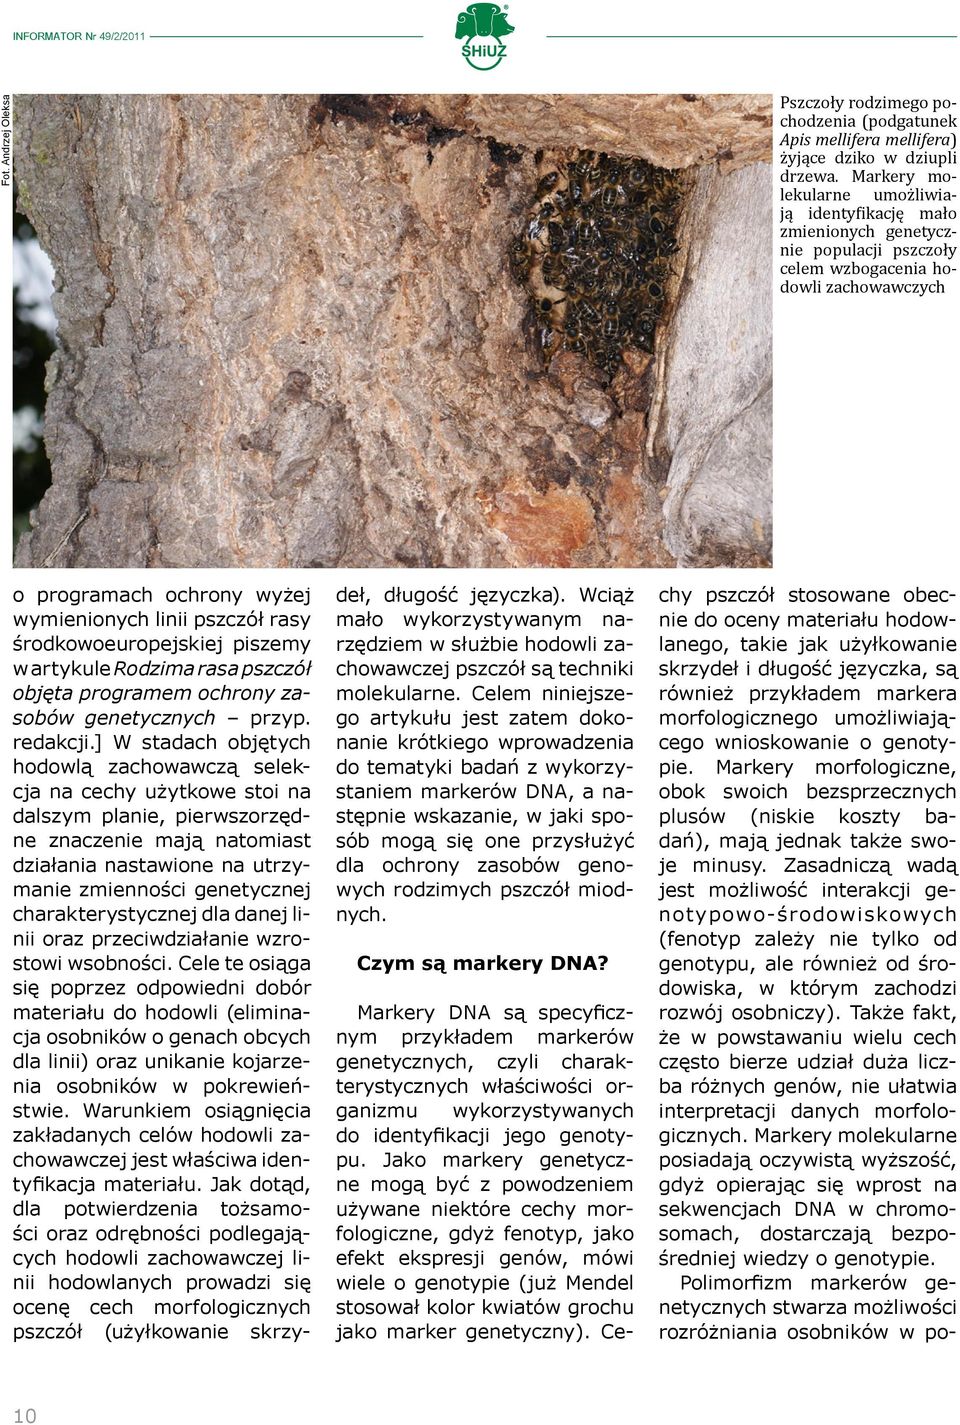 środkowoeuropejskiej piszemy w artykule Rodzima rasa pszczół objęta programem ochrony zasobów genetycznych przyp. redakcji.